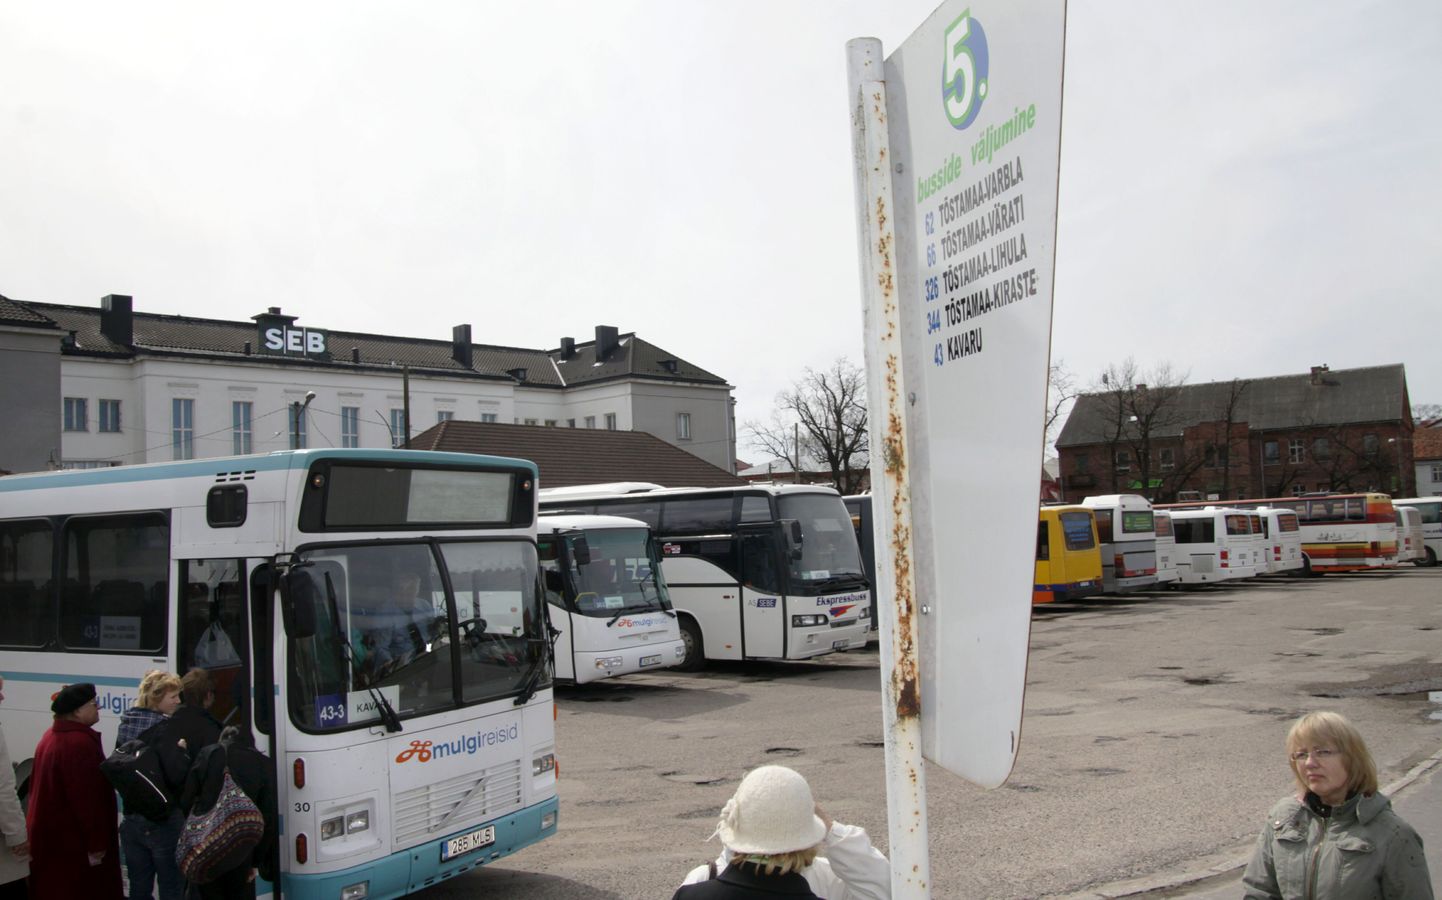 Pärnu bussijaam.